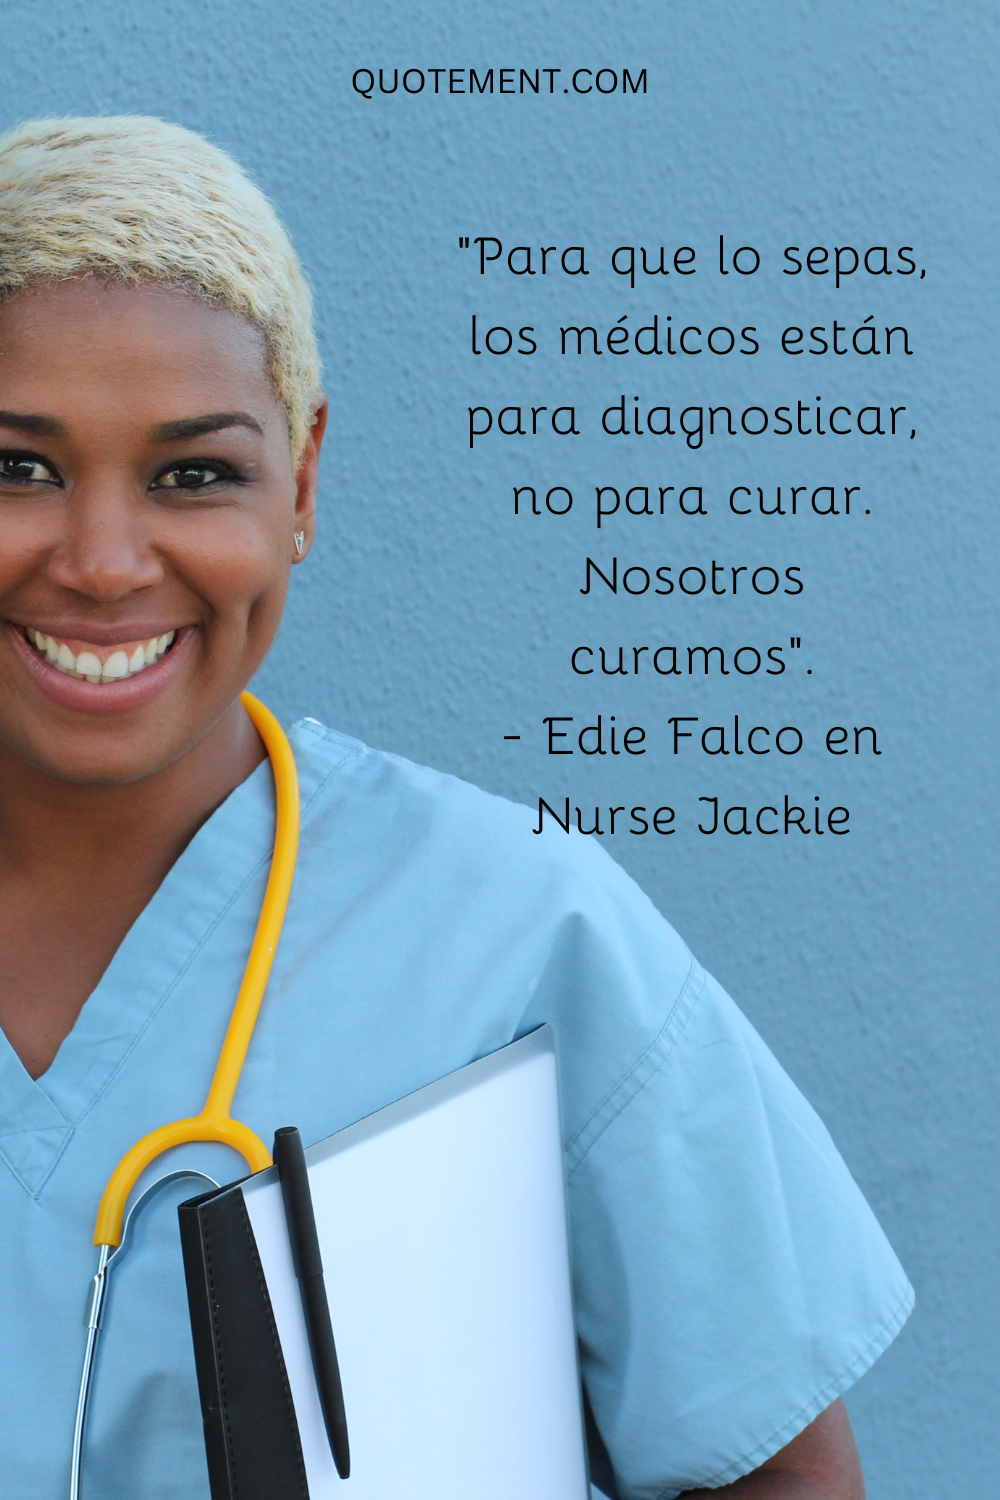 "Para que lo sepas, los médicos están para diagnosticar, no para curar. Nosotros curamos". - Edie Falco en Nurse Jackie